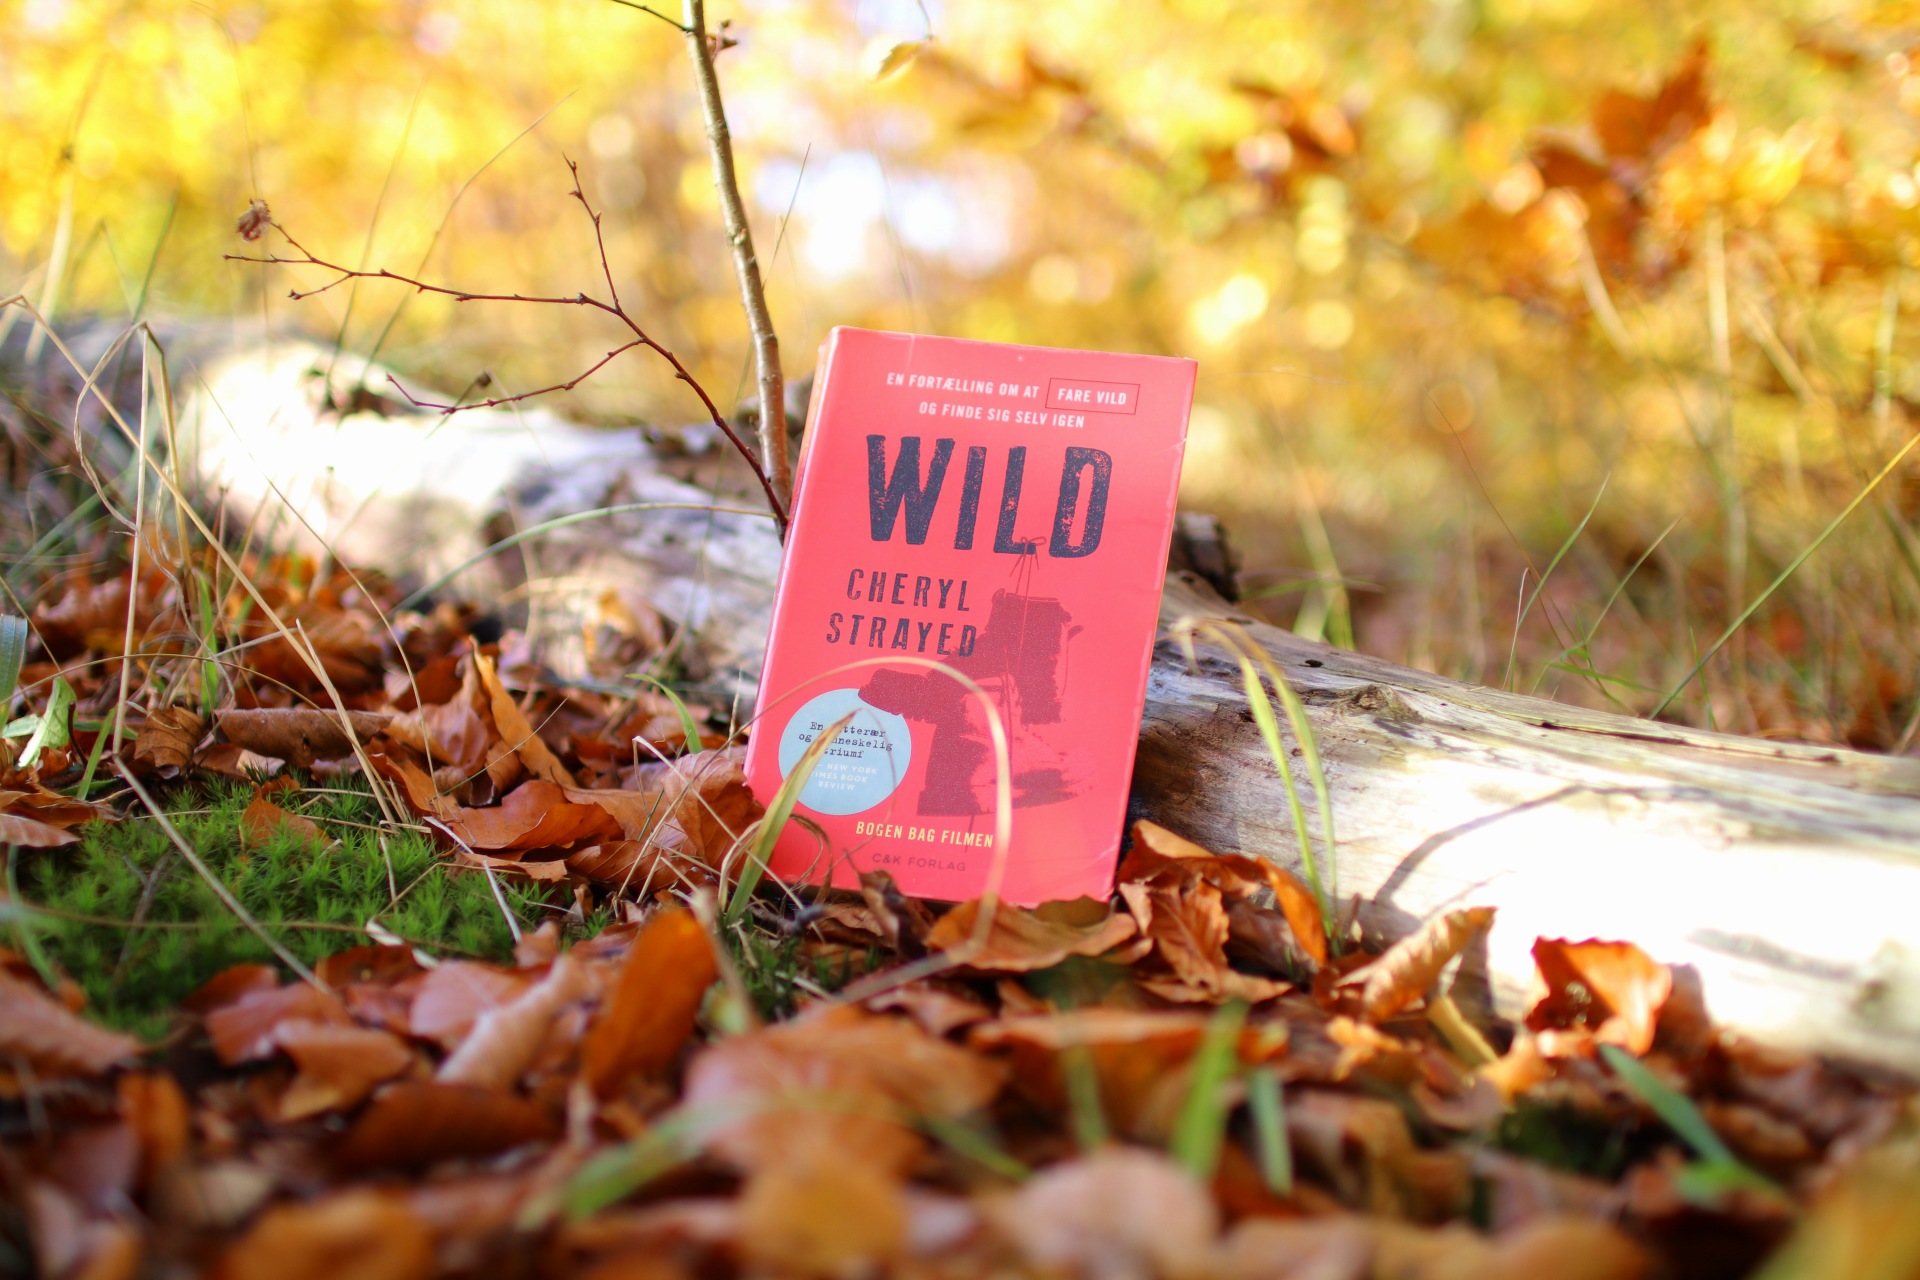 Bogen Wild af Cheryl Strayed står lænet op ad en træstamme i skovbunden. Skovbunden er dækket af brune efterårsblade og baggrunden er lys og gullig.